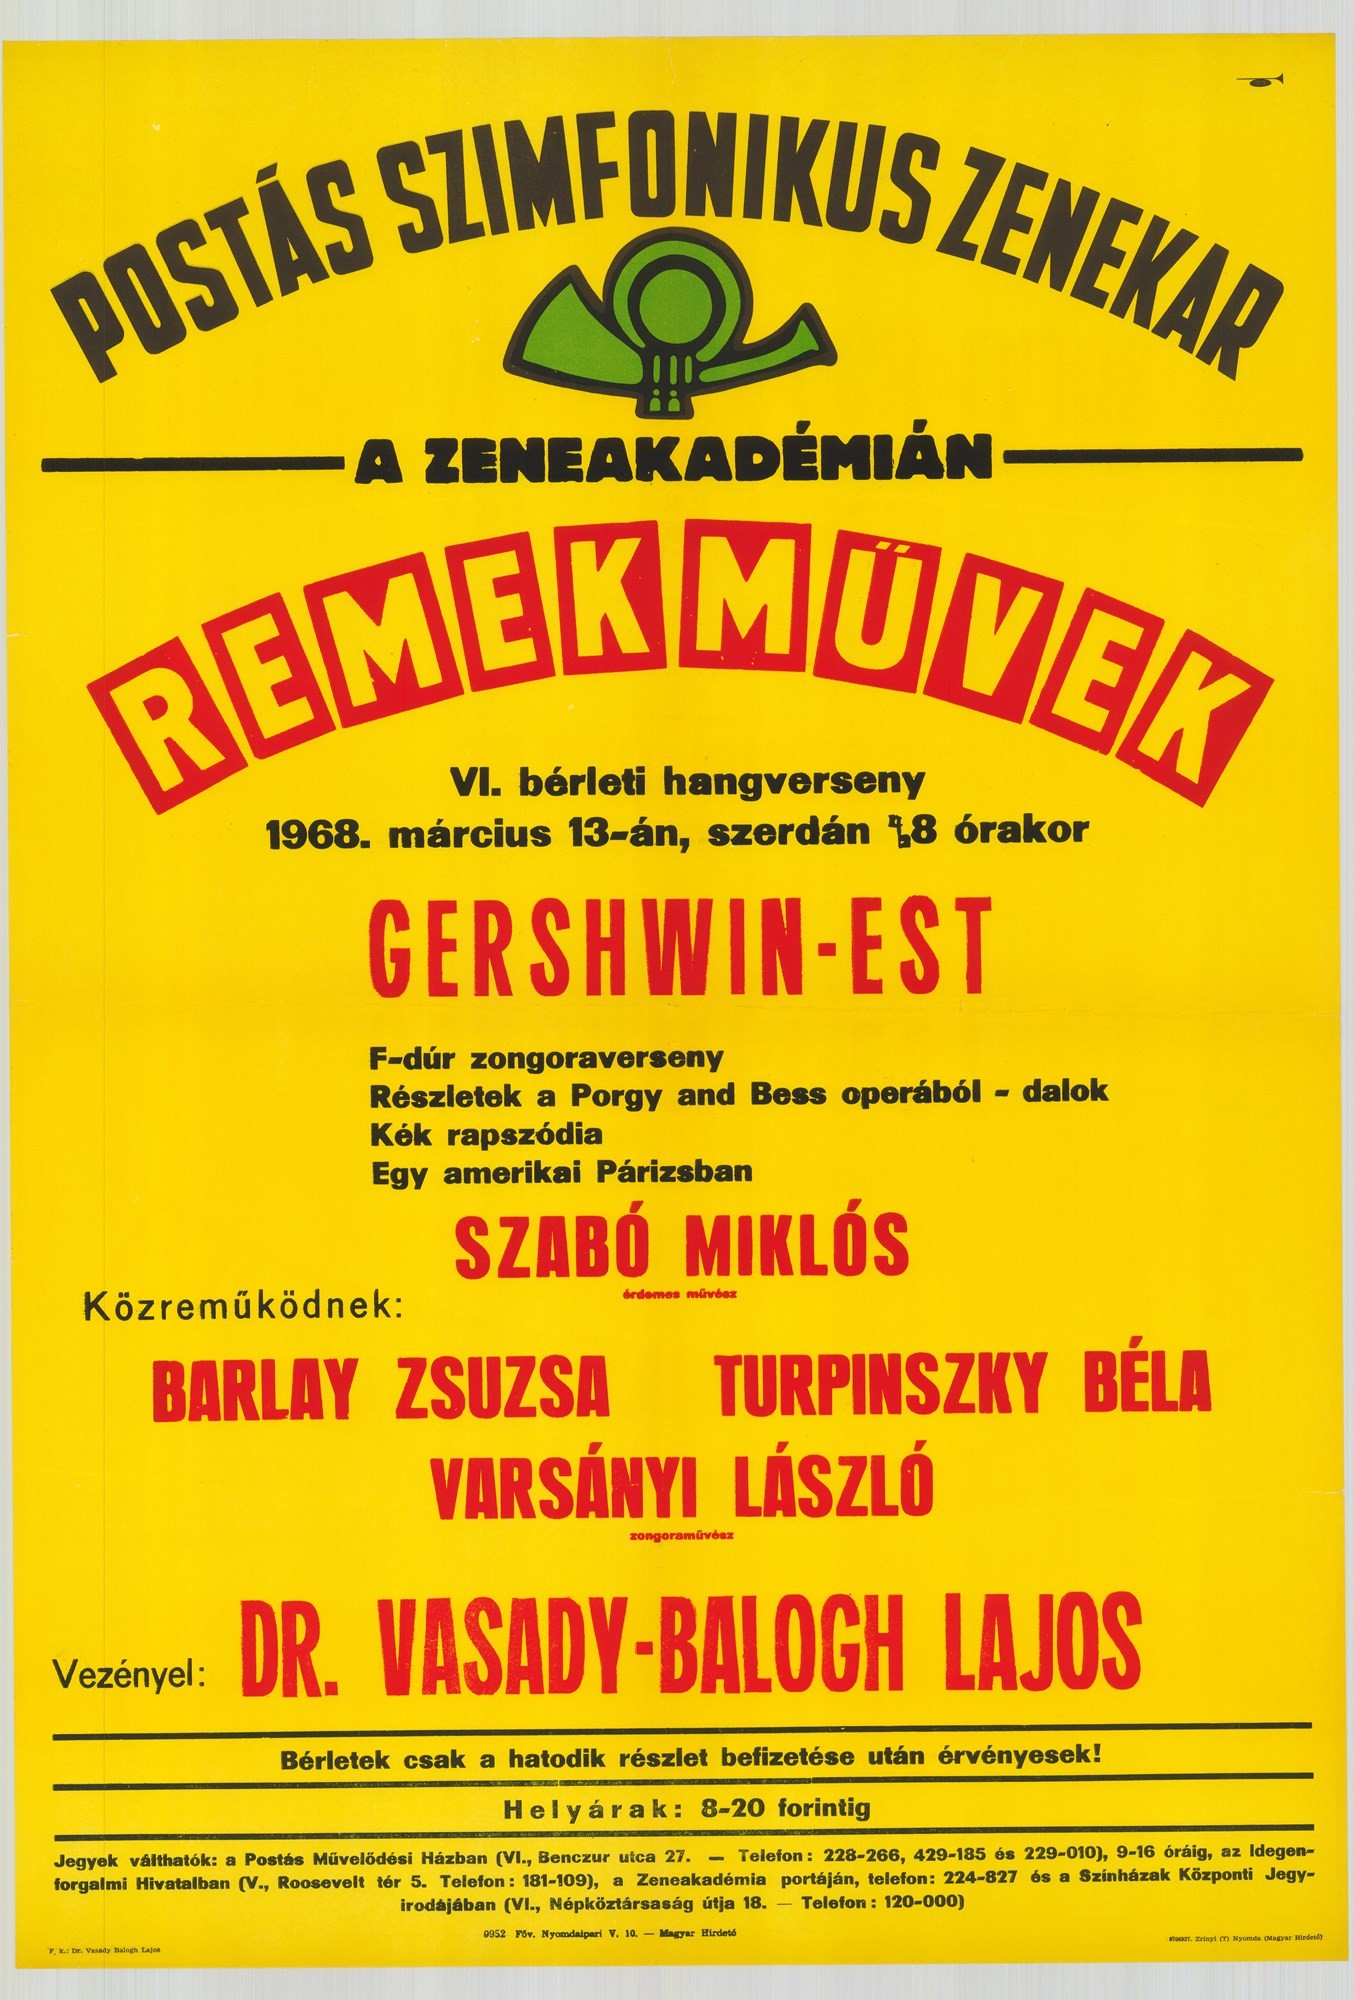 Plakát - Postás Szimfonikus Zenekar a Zeneakadémián, Remekművek, 1968 (Postamúzeum CC BY-NC-SA)